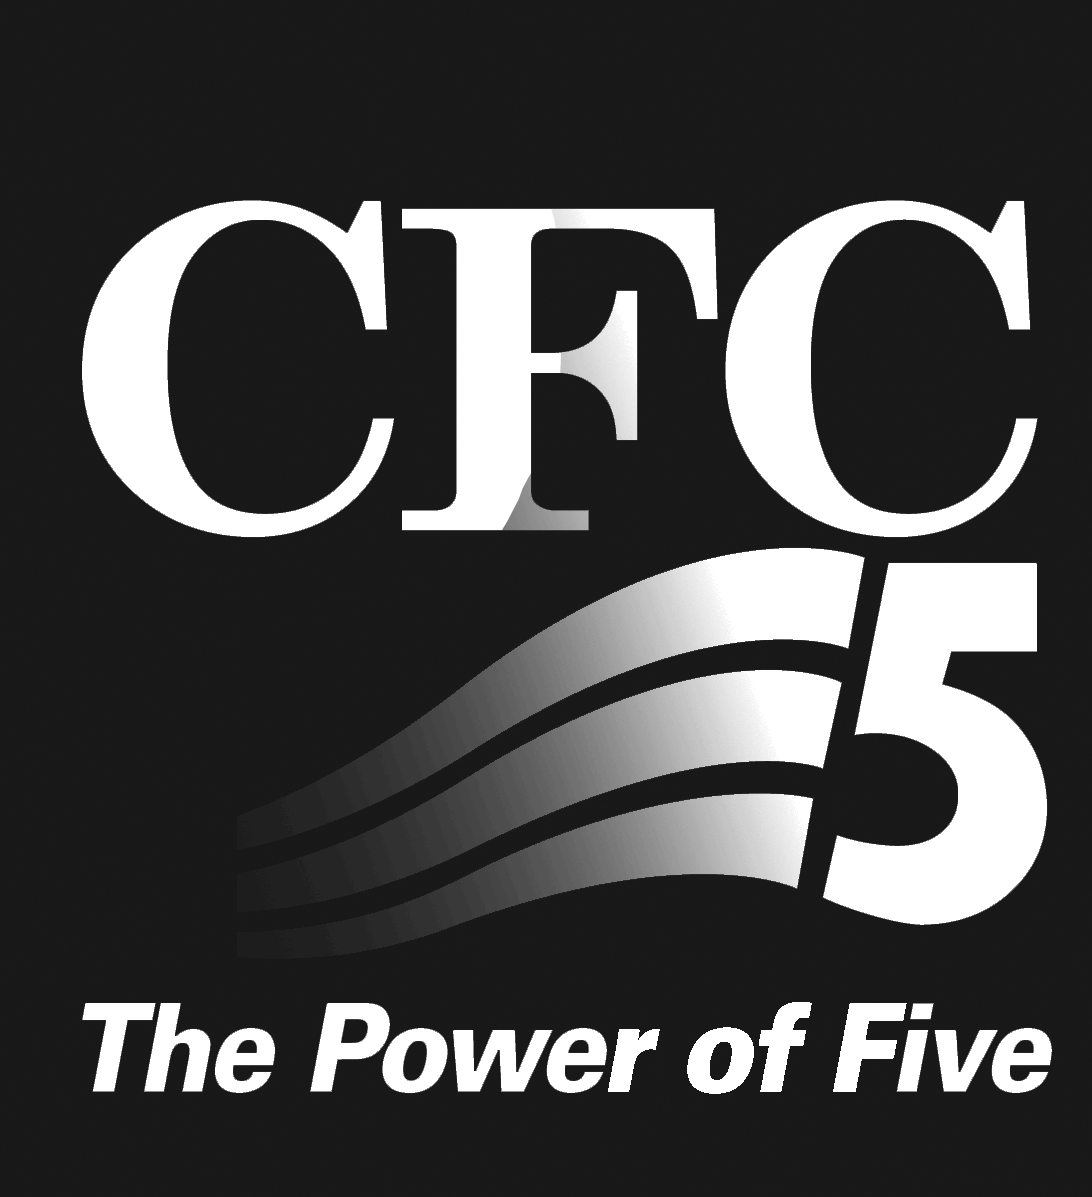 CFC Power of 5 Logo black & white - GIF - 400 x 438